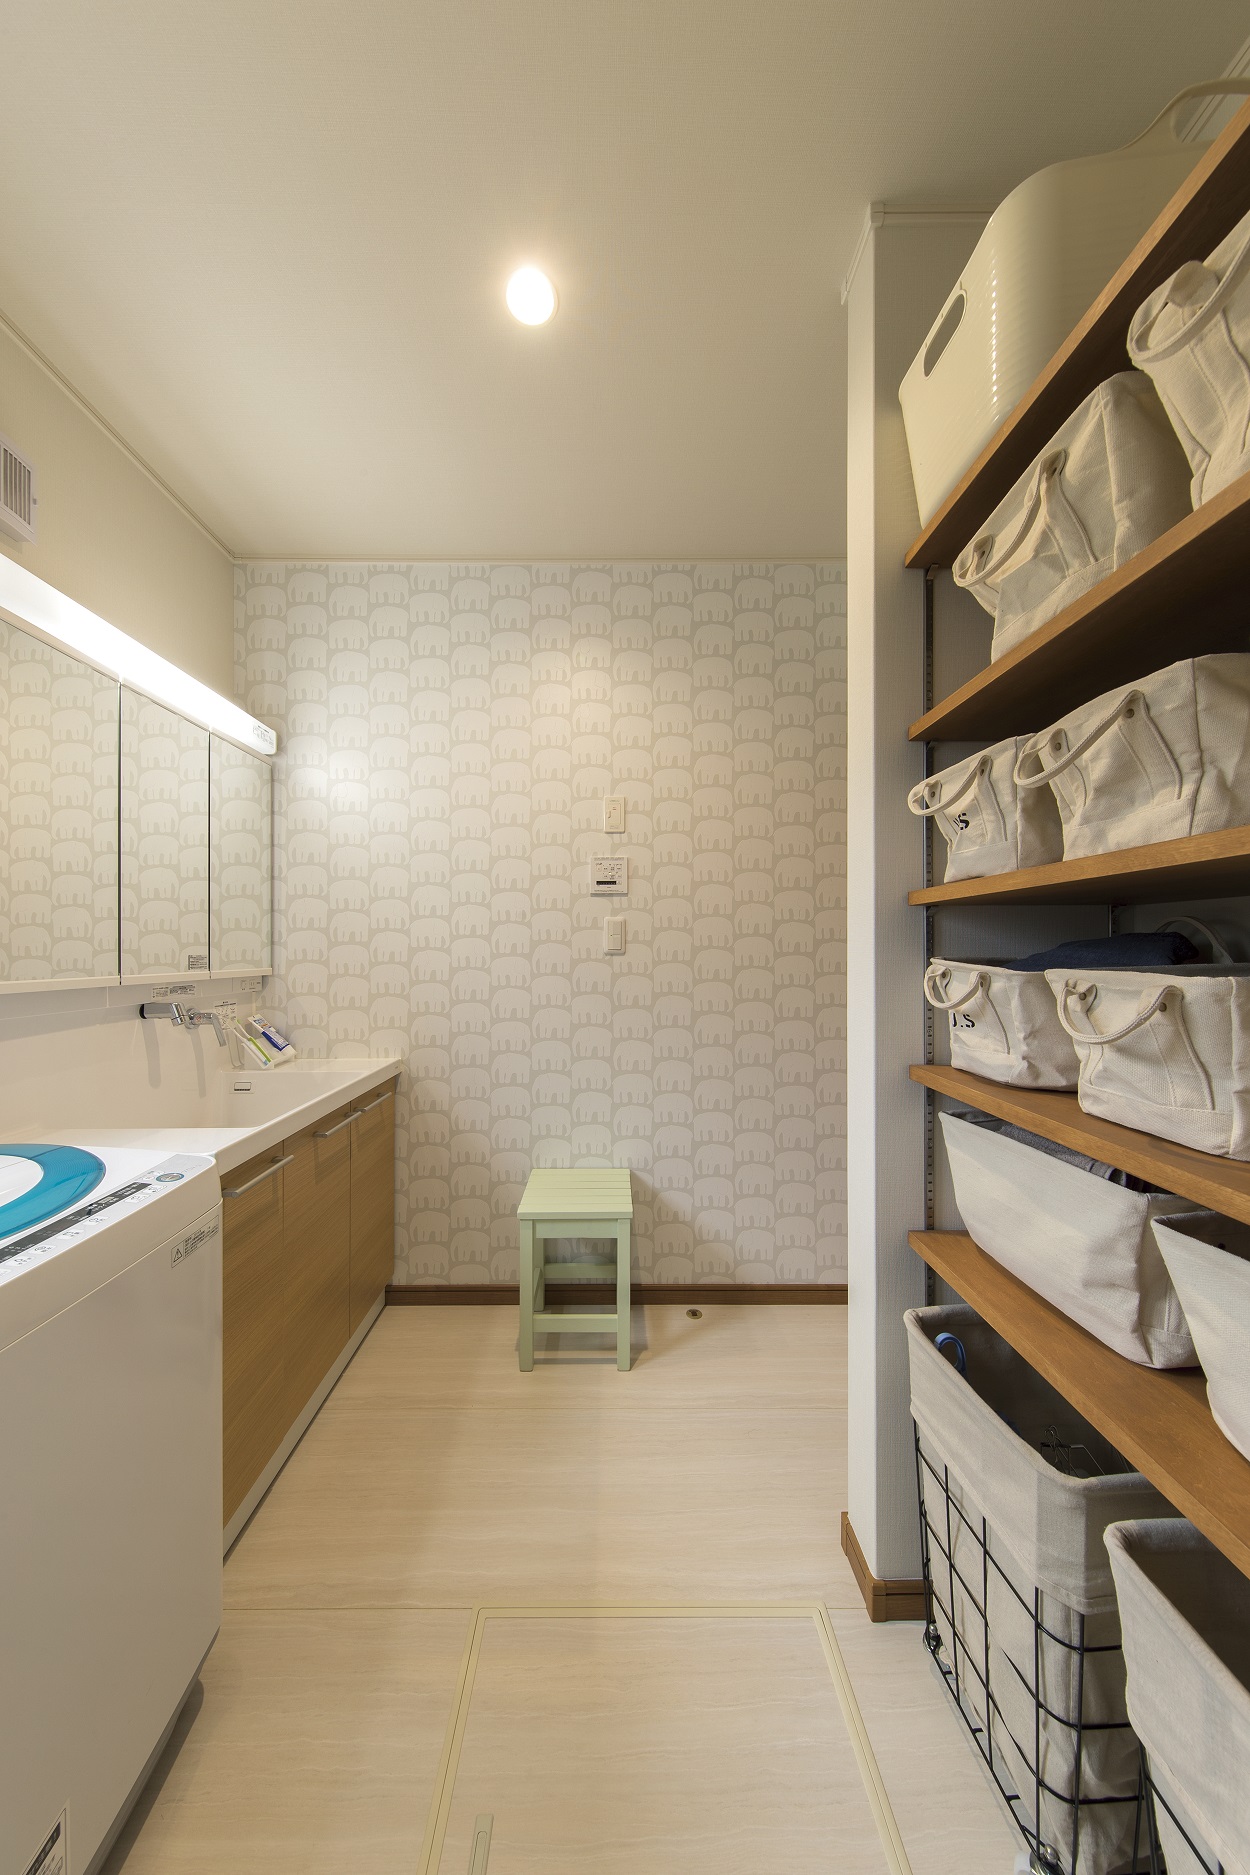 ゆとりある収納スペースが魅力の洗面所兼用ランドリールーム